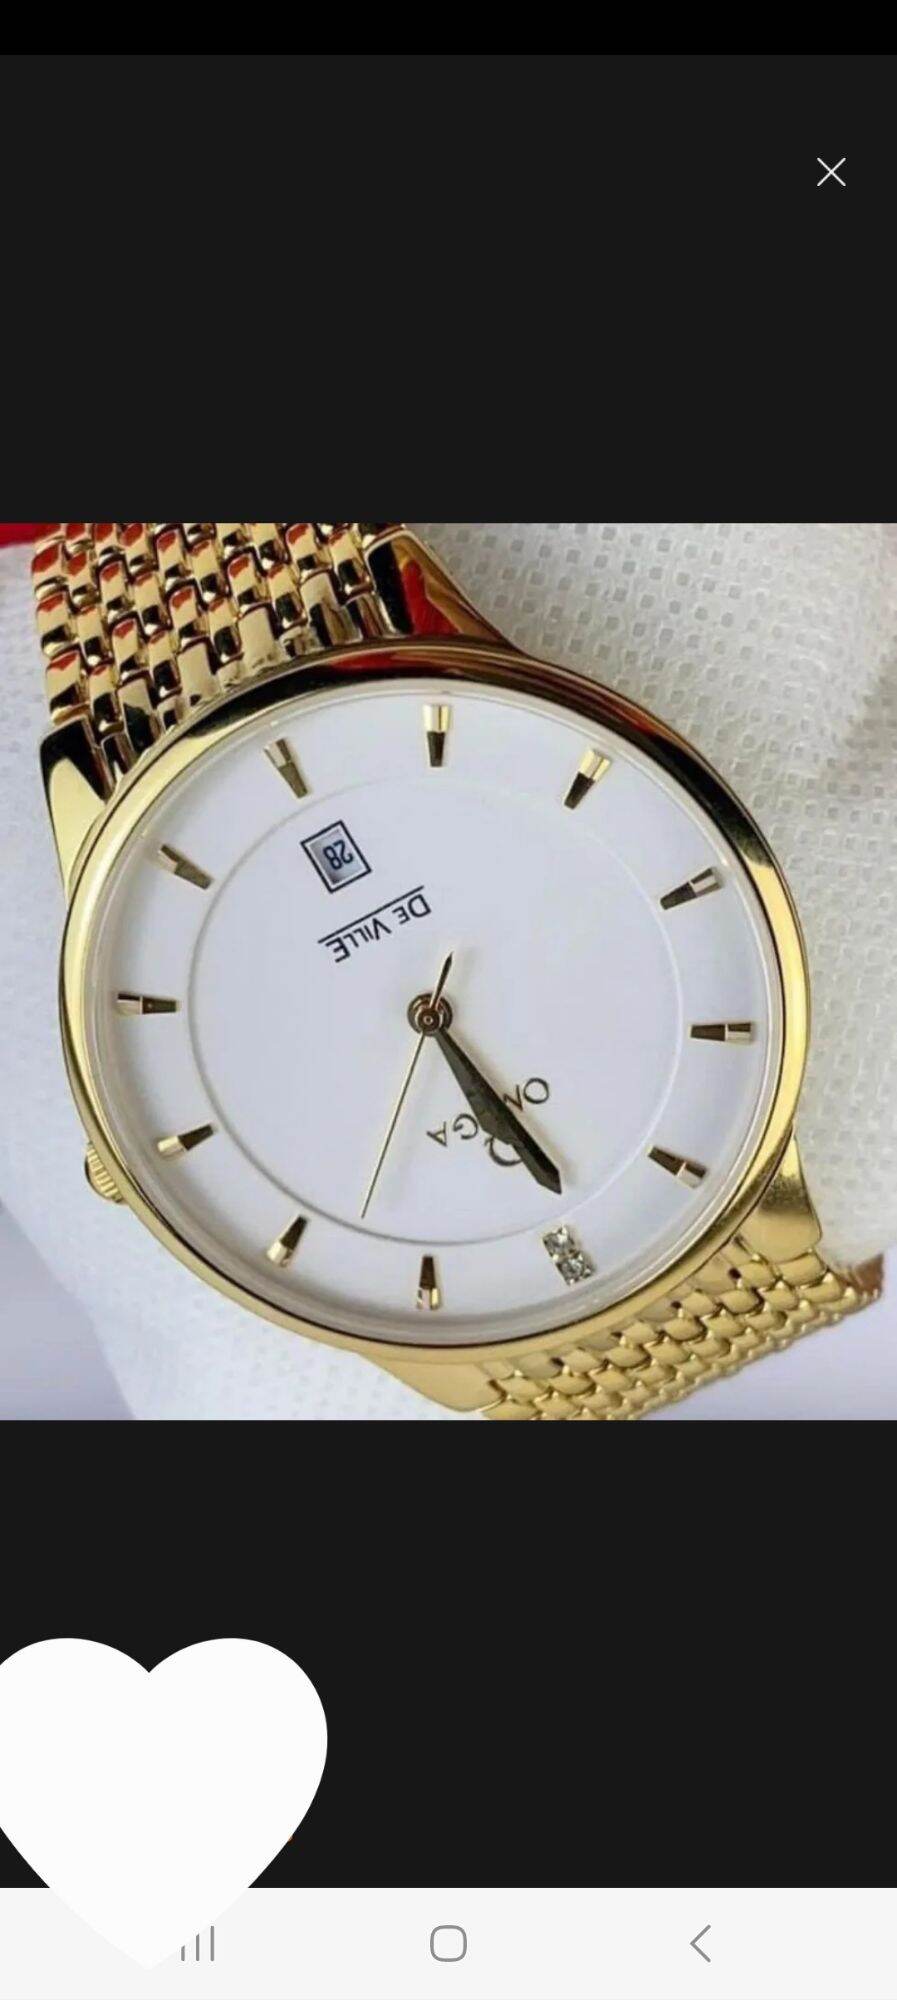 đồng hồ nam OMEGA siêu mỏng đẹp. chống nước tuyệt đối. kính sapphire, hàng chuẩn nhật xịn  chạy pin, size 40mm